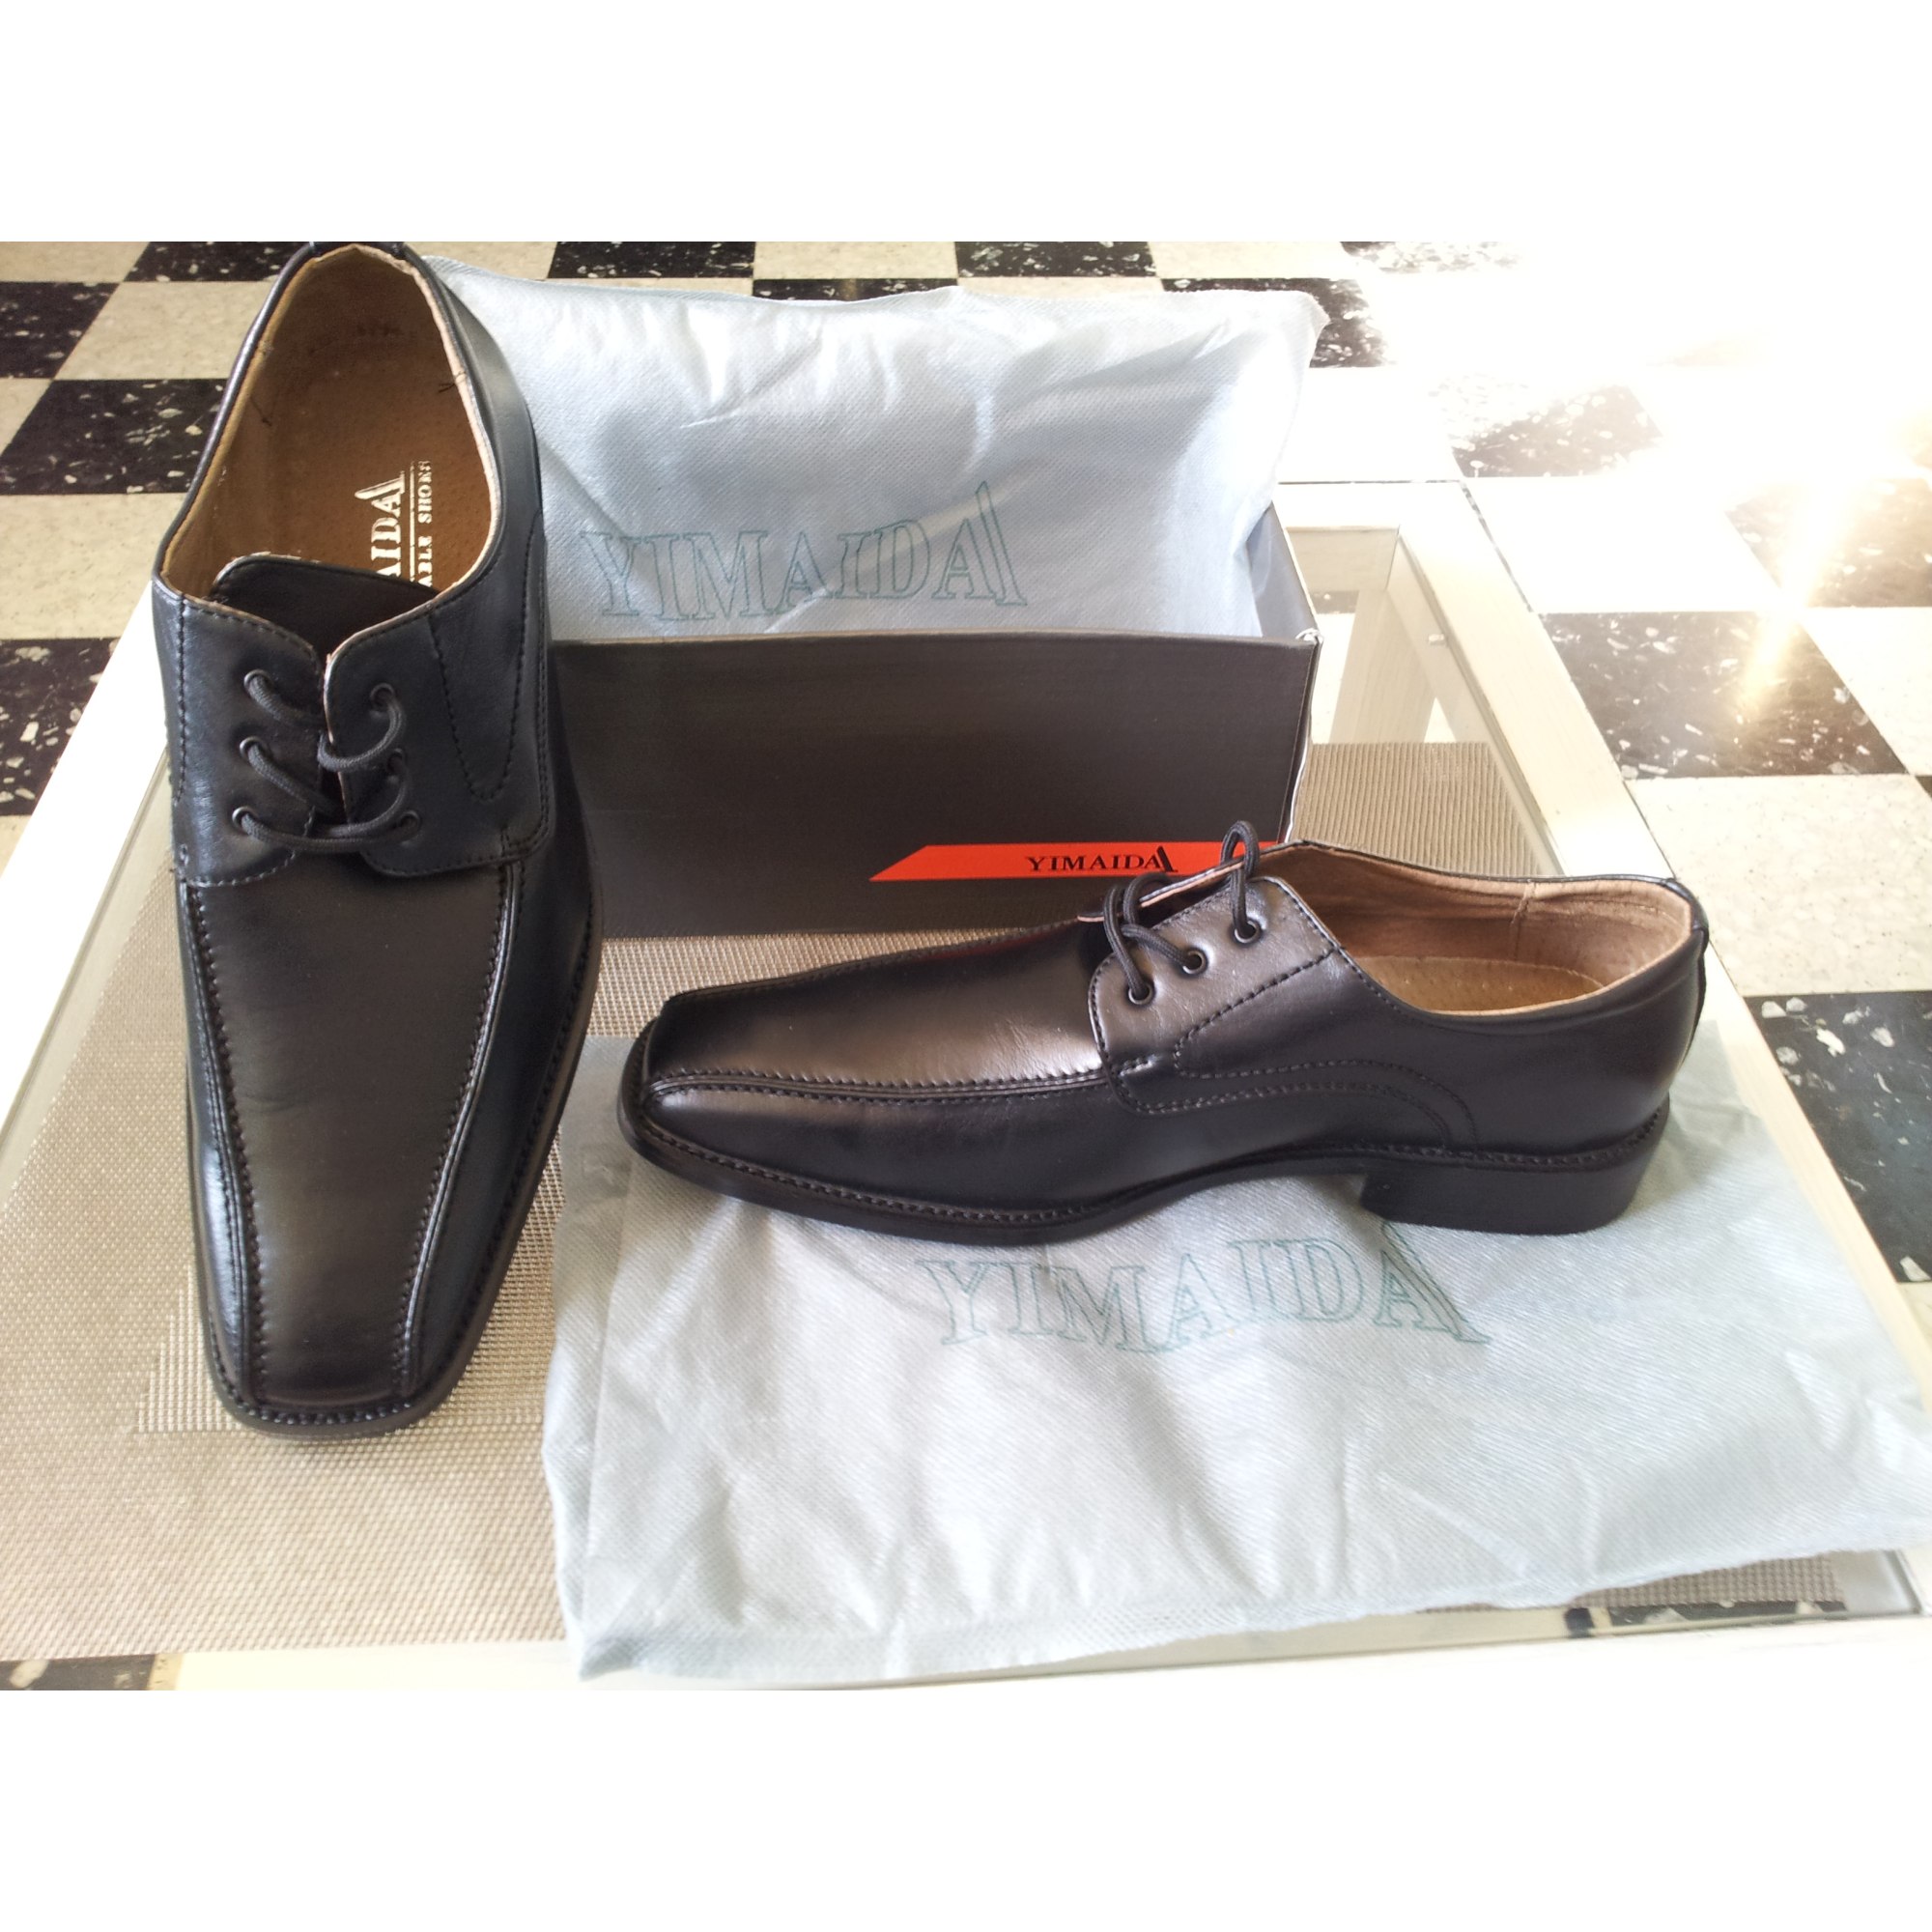 Chaussures à lacets YIMAIDA 43 noir vendu par Lauv 06461674 - 1790269